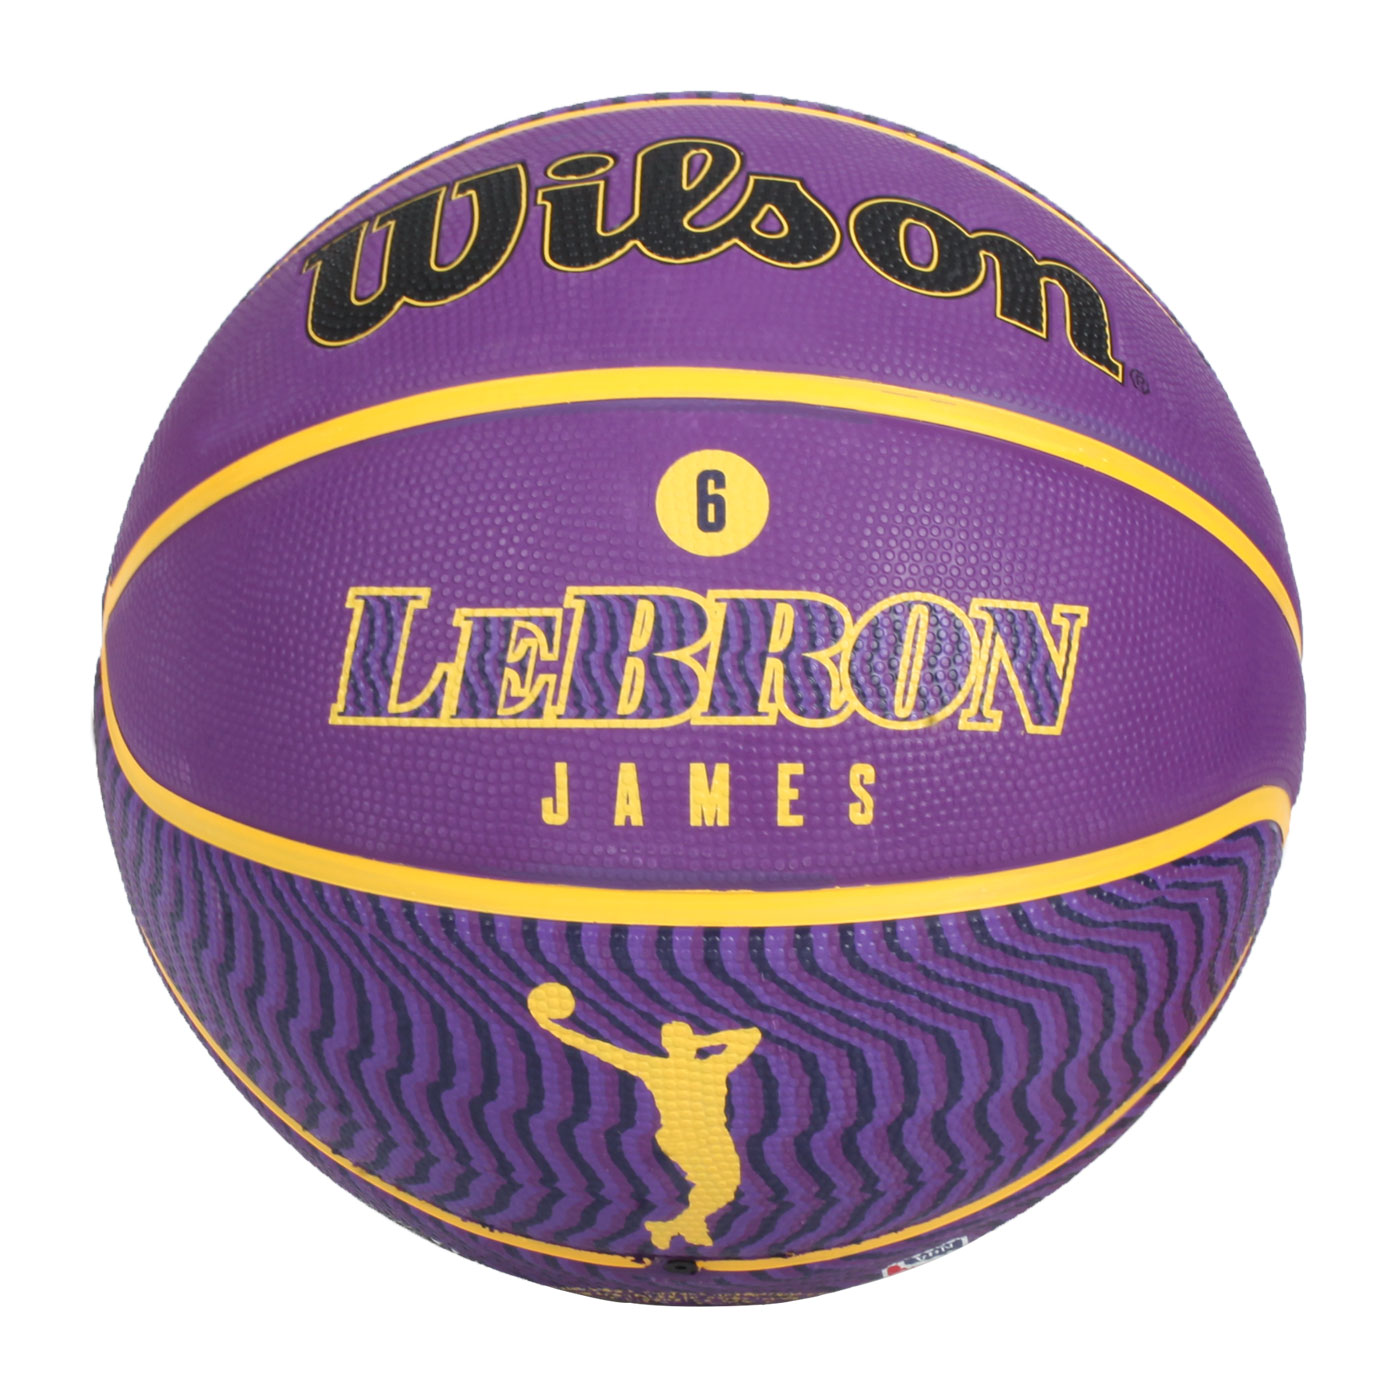 WILSON NBA球員系列22 LEBRON 橡膠籃球#7 WZ4005901XB7 - 葡萄紫黃黑